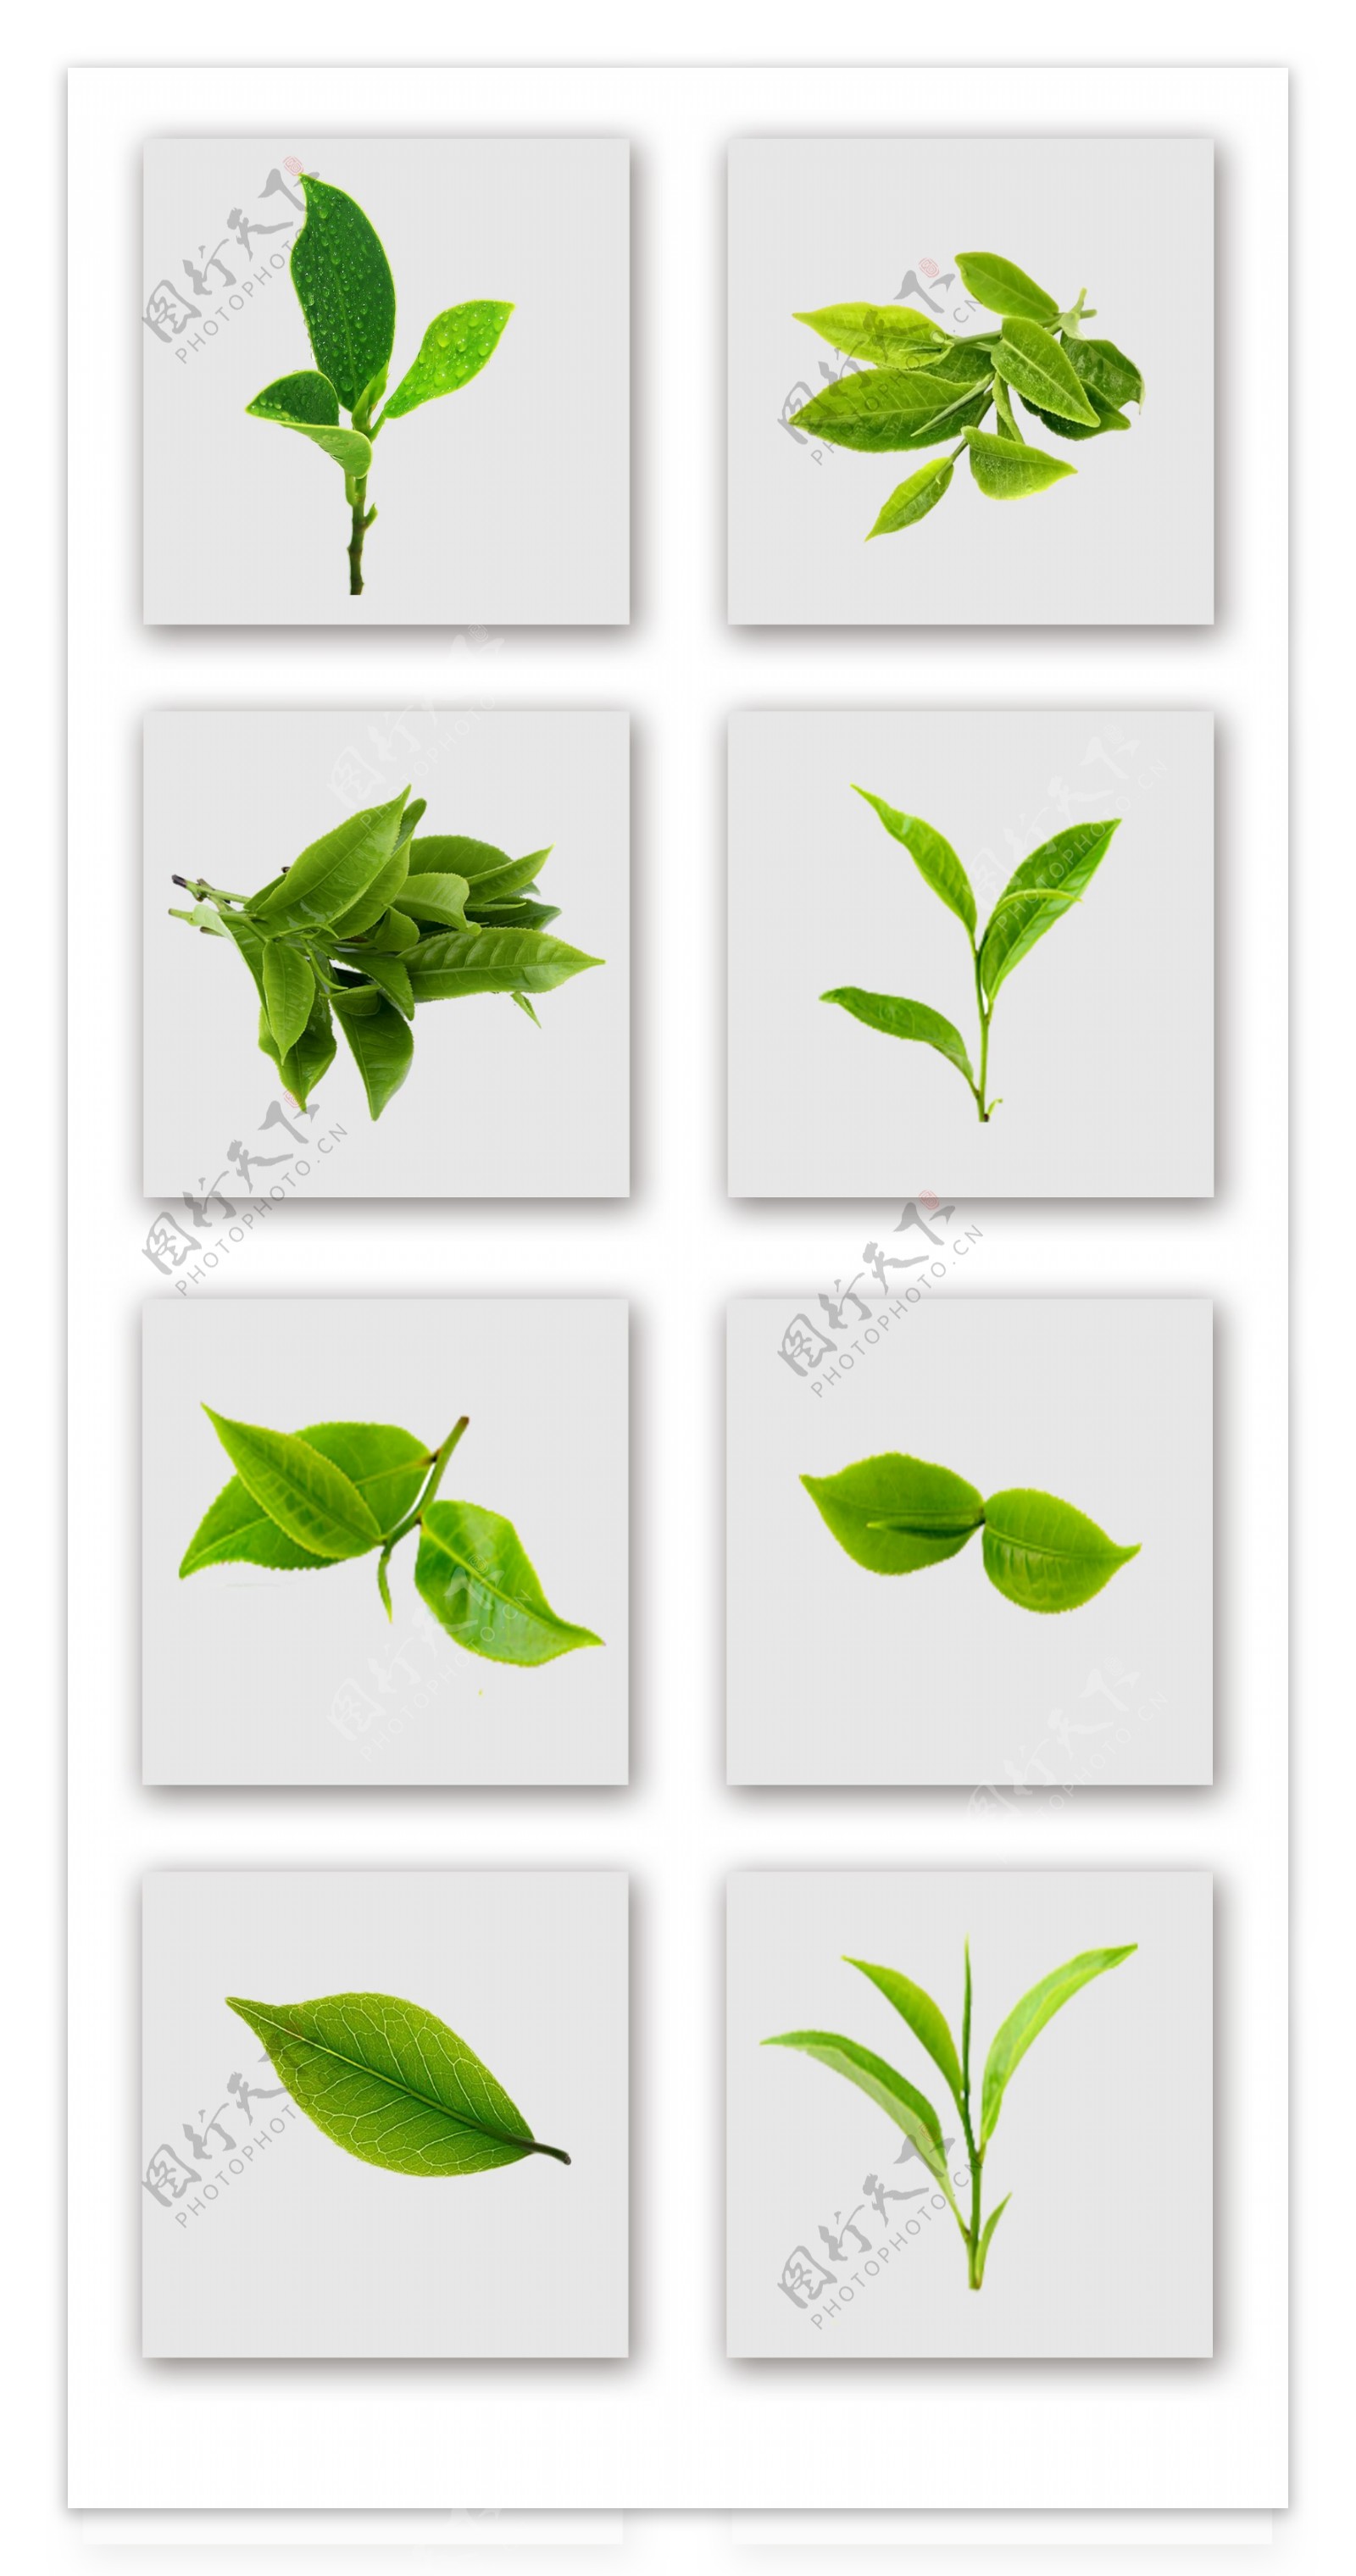 一组清新绿茶叶子实物拍摄元素设计